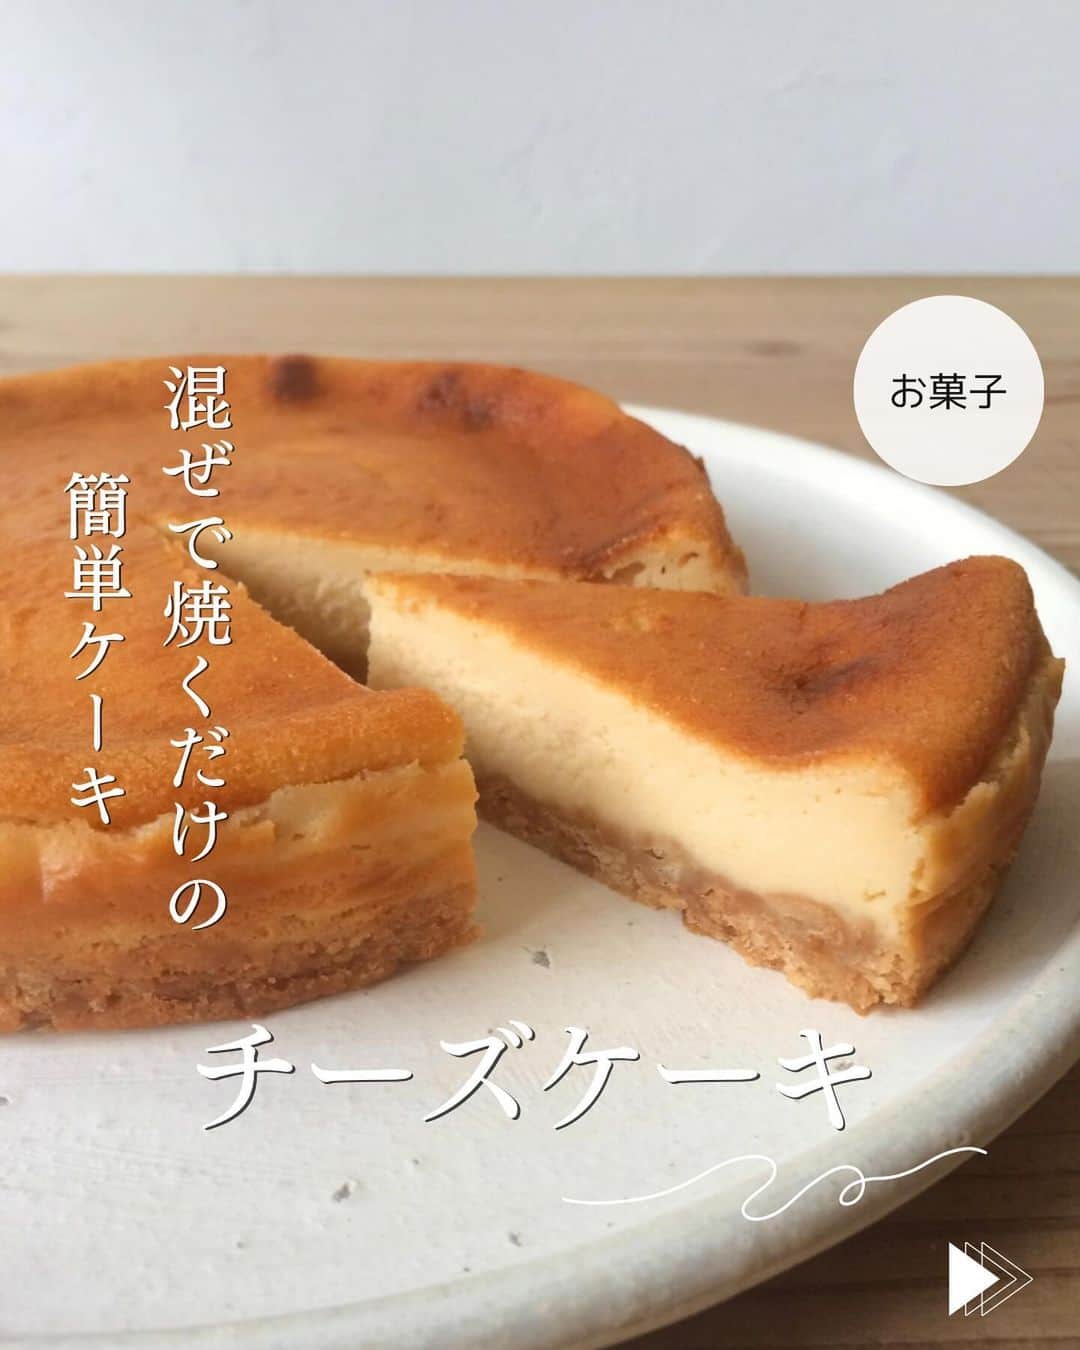 かみじともこのインスタグラム：「☆#チーズケーキ ☆  @eiyoushino_recipe  🆔レシピID: 1383540  今日のおすすめは 「チーズケーキ」👩🏻‍🍳 クックパッドでたくさんの方が作ってくれているレシピです。つくれぽ5200件を越えて殿堂入りしています。 作り方も材料もシンプルで失敗知らずのレシピです。 土台に使っているのは昔からマリーのビスケット。 写真は18センチの型で焼いてますが お好みでもう少し小さい型でも大丈夫です。  ぜひ美味しくできますように☺️  💬💬💬 先日クックパッドに投稿した ☆かんたんブロッコリー☆に早速クックパッドへつくれぽ送って下さった方ありがとうございます！ ブロッコリーのめちゃめちゃ簡単なレシピなので レシピにするのもなぁ。と思ってたんですが、、、 普段の食事の中では調味料少なめ、焼くだけとかのレシピが多いので シンプルなレシピも投稿していこうと思います 💬💬💬 そして、最後の動画に 今お気に入りの干し芋を載せてます たくさん入ってるので、ラップに包んで冷凍してます。おやつにちょこっと食べるのに良いです。 ストーリーズとハイライトの【おすすめ品】にリンク貼ってますので興味のある方はご覧になってください♪ ＿＿＿＿＿＿＿＿＿＿＿＿＿＿＿＿＿＿＿＿  cookpadに毎日たくさんのつくれぽを ありがとうございます！ みなさんから届いた大切なつくれぽは 私の大切な宝物です🤍 つくれぽ送ってくれるみなさん大好きです😍 ＿＿＿＿＿＿＿＿＿＿＿＿＿＿＿＿＿＿＿＿＿  🍳作られたお料理はぜひ🍳 【 #栄養士のれしぴ 】 【 #栄養士のれしぴのレシピ 】 を付けてくださいね✨ (れしぴはひらがなです✍️) ストーリーズで ご紹介させていただく事があります♪ ＿＿＿＿＿＿＿＿＿＿＿＿＿＿＿＿＿＿＿＿＿＿  お知らせ❶  YouTubeはじめました ストーリーズ、ハイライトのリンクからどうぞ ▶︎▶︎▶︎ @eiyoushino_recipe  最近の動画では 【絶品！ねぎ塩だれ5選】 【サラダ作りにおすすめのキッキン道具5選】 を紹介しています。 ＿＿＿＿＿＿＿＿＿＿＿＿＿＿＿＿＿＿＿＿＿＿  お知らせ❷  楽天ROOMに 愛用のキッチン用品や、便利な道具 美味しかった物や、食器など載せてます♪ ＿＿＿＿＿＿＿＿＿＿＿＿＿＿＿＿＿＿＿＿＿＿  お知らせ❸  新刊【☆栄養士のれしぴ☆黄金だれ】 宝島社より好評販売中！ ＿＿＿＿＿＿＿＿＿＿＿＿＿＿＿＿＿＿＿＿＿＿＿  #栄養士のれしぴ #栄養士のれしぴのレシピ  #ケーキ #チーズケーキ #副菜 #簡単副菜 #簡単料理　 #基本の料理　 #基本のレシピ　 #家庭料理　 #定番料理 #おうちごはん #レシピ #簡単レシピ #暮らし #暮らしを楽しむ #クックパッド　 #cookpad #recipe #cooking #料理 #器 #30代　#40代  #50代　#60代 #youtubeはじめました #楽天room」